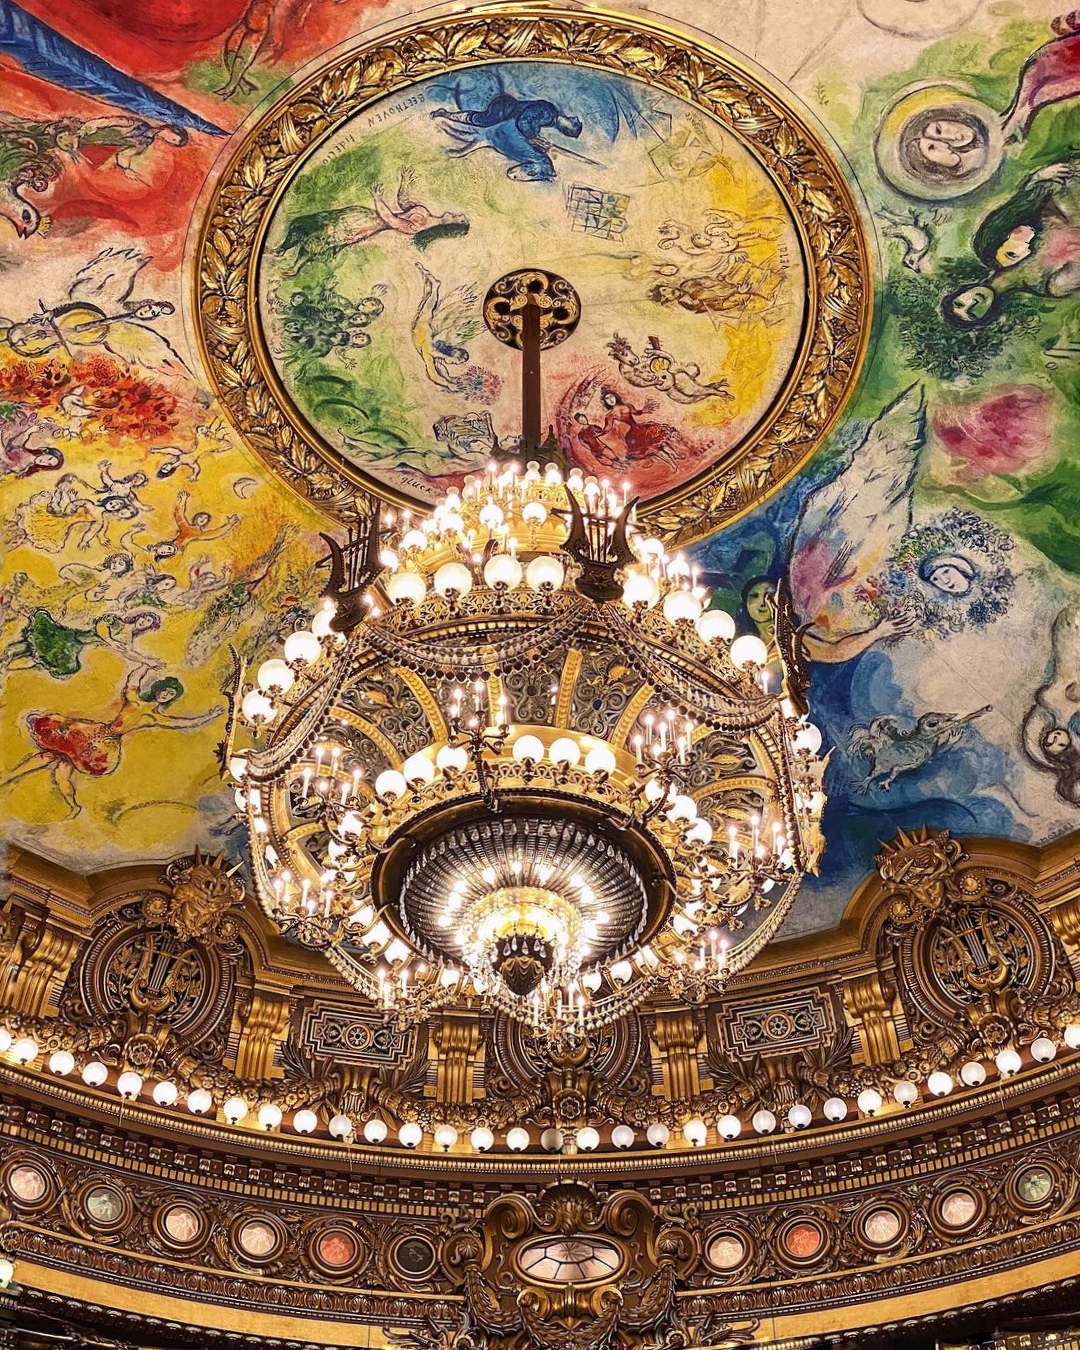 Le grand lustre de l'Opéra Garnier